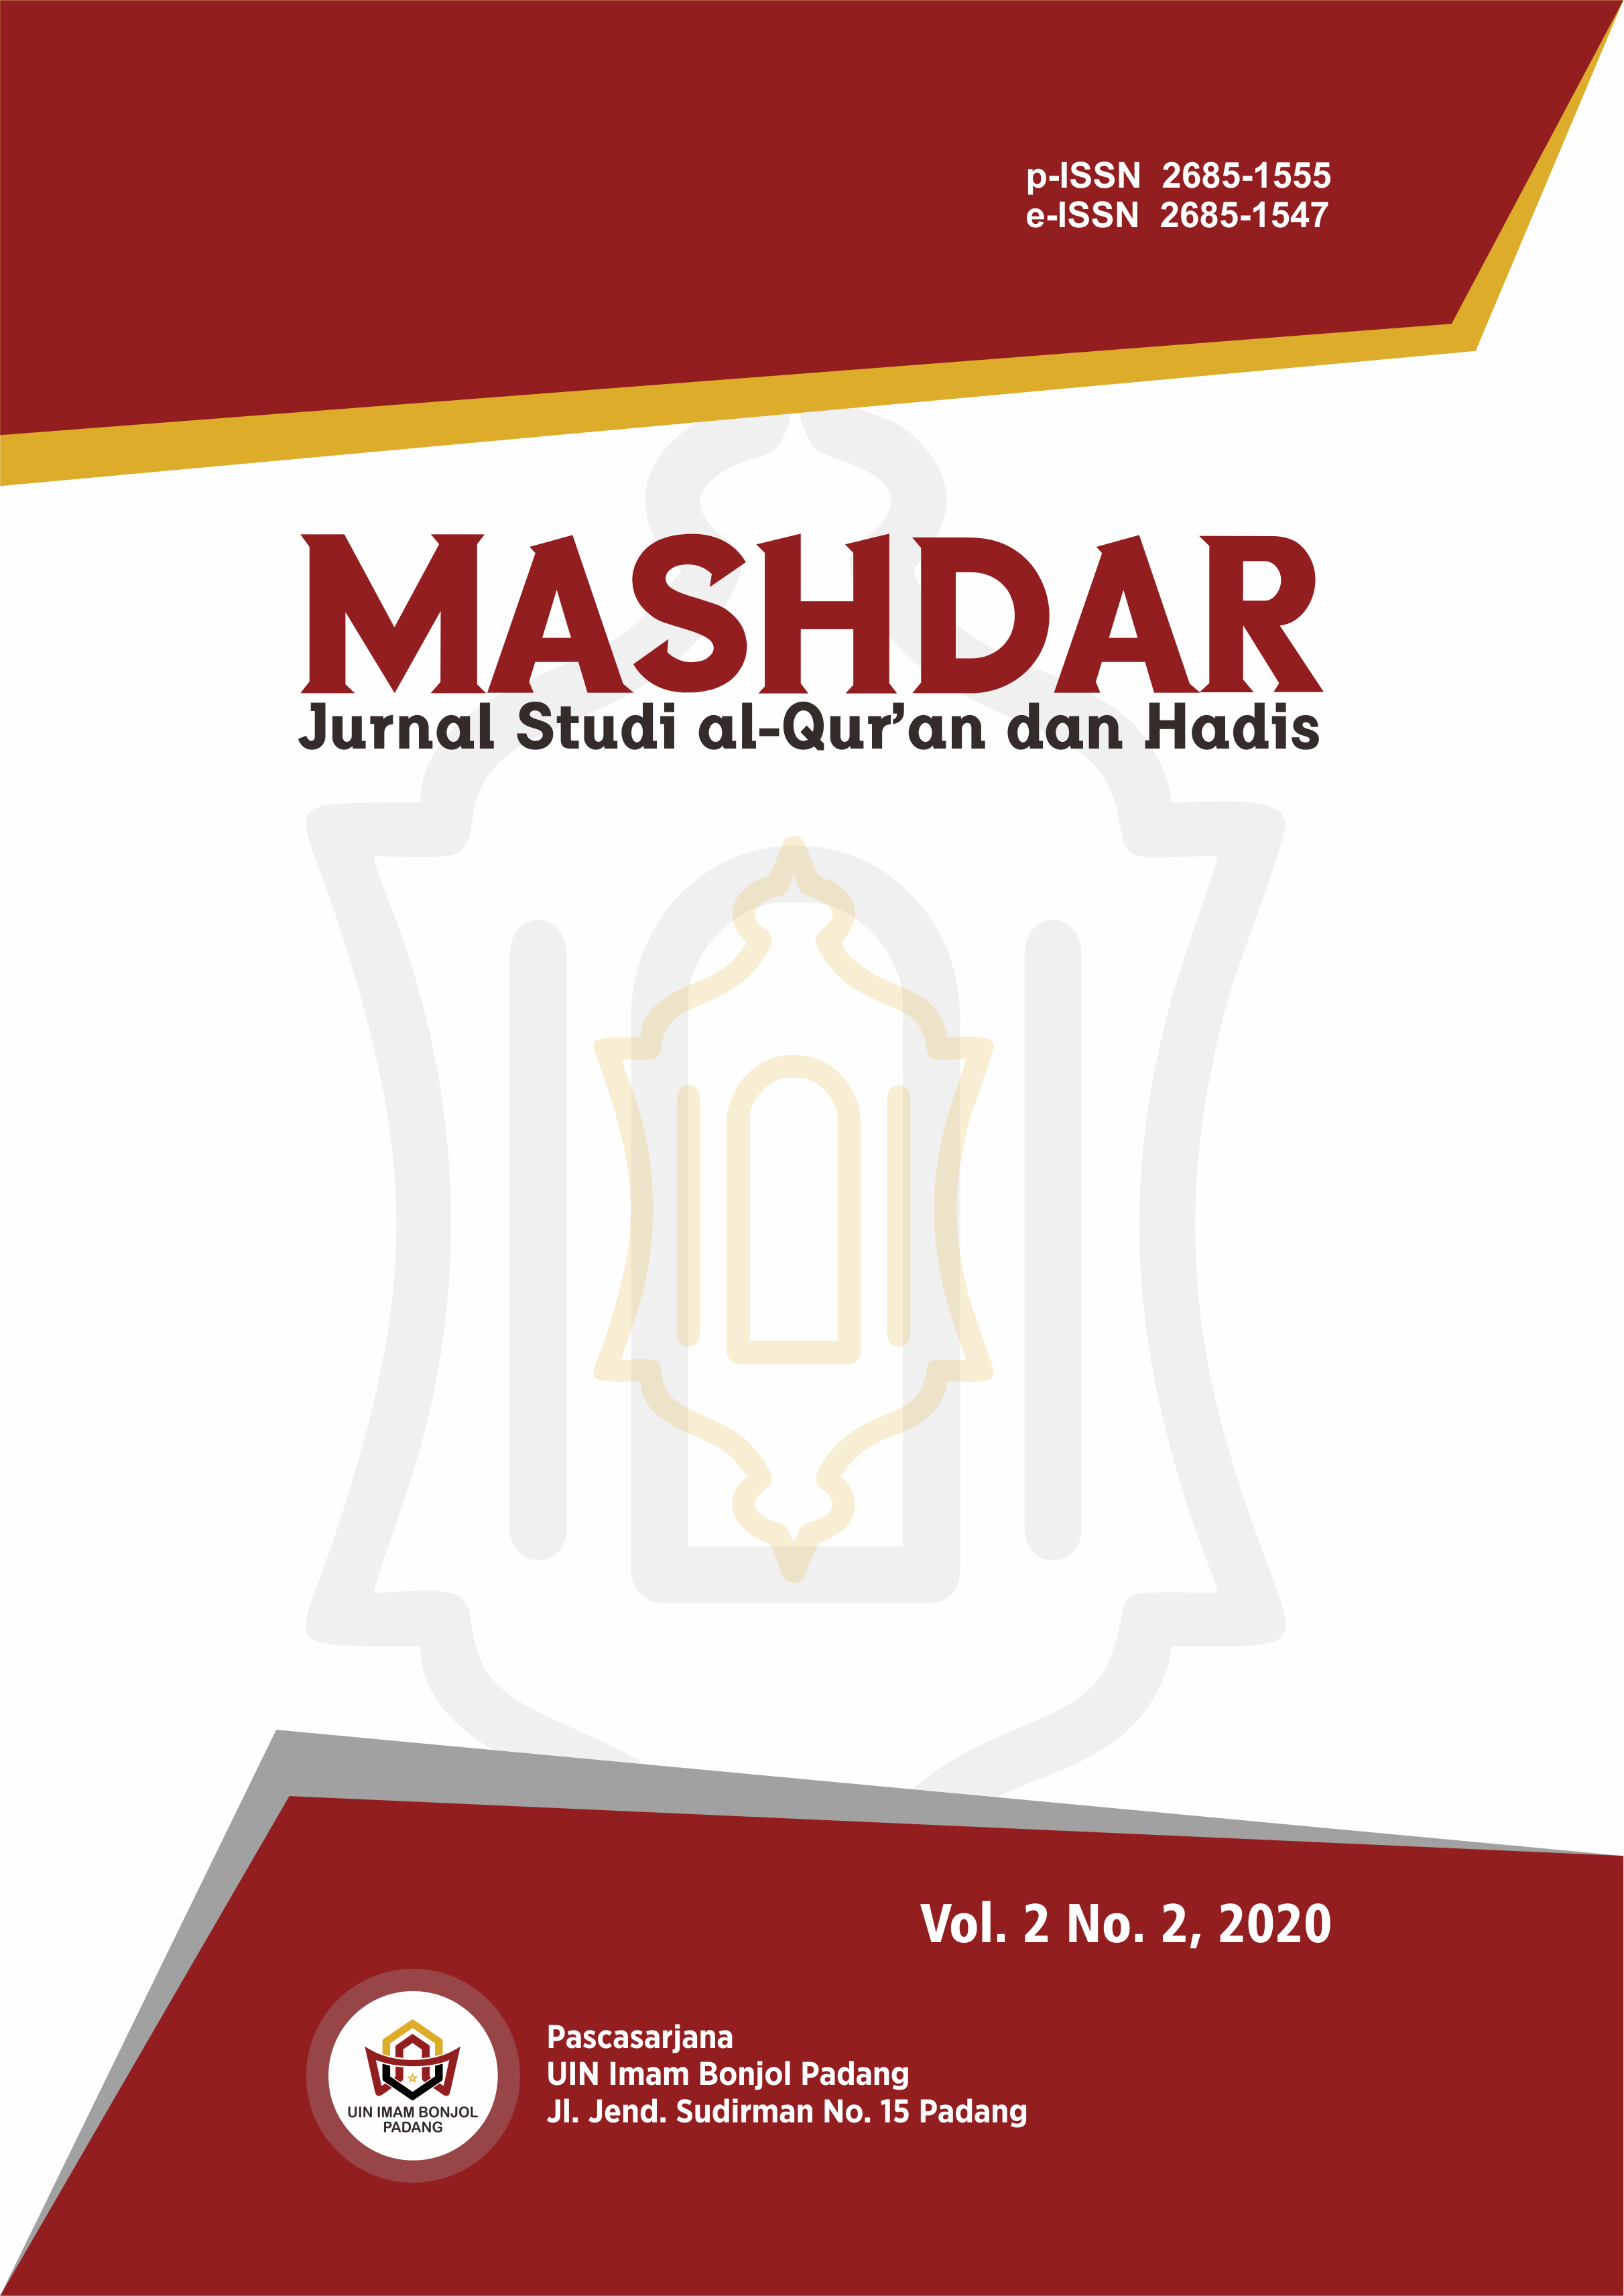 Mashdar